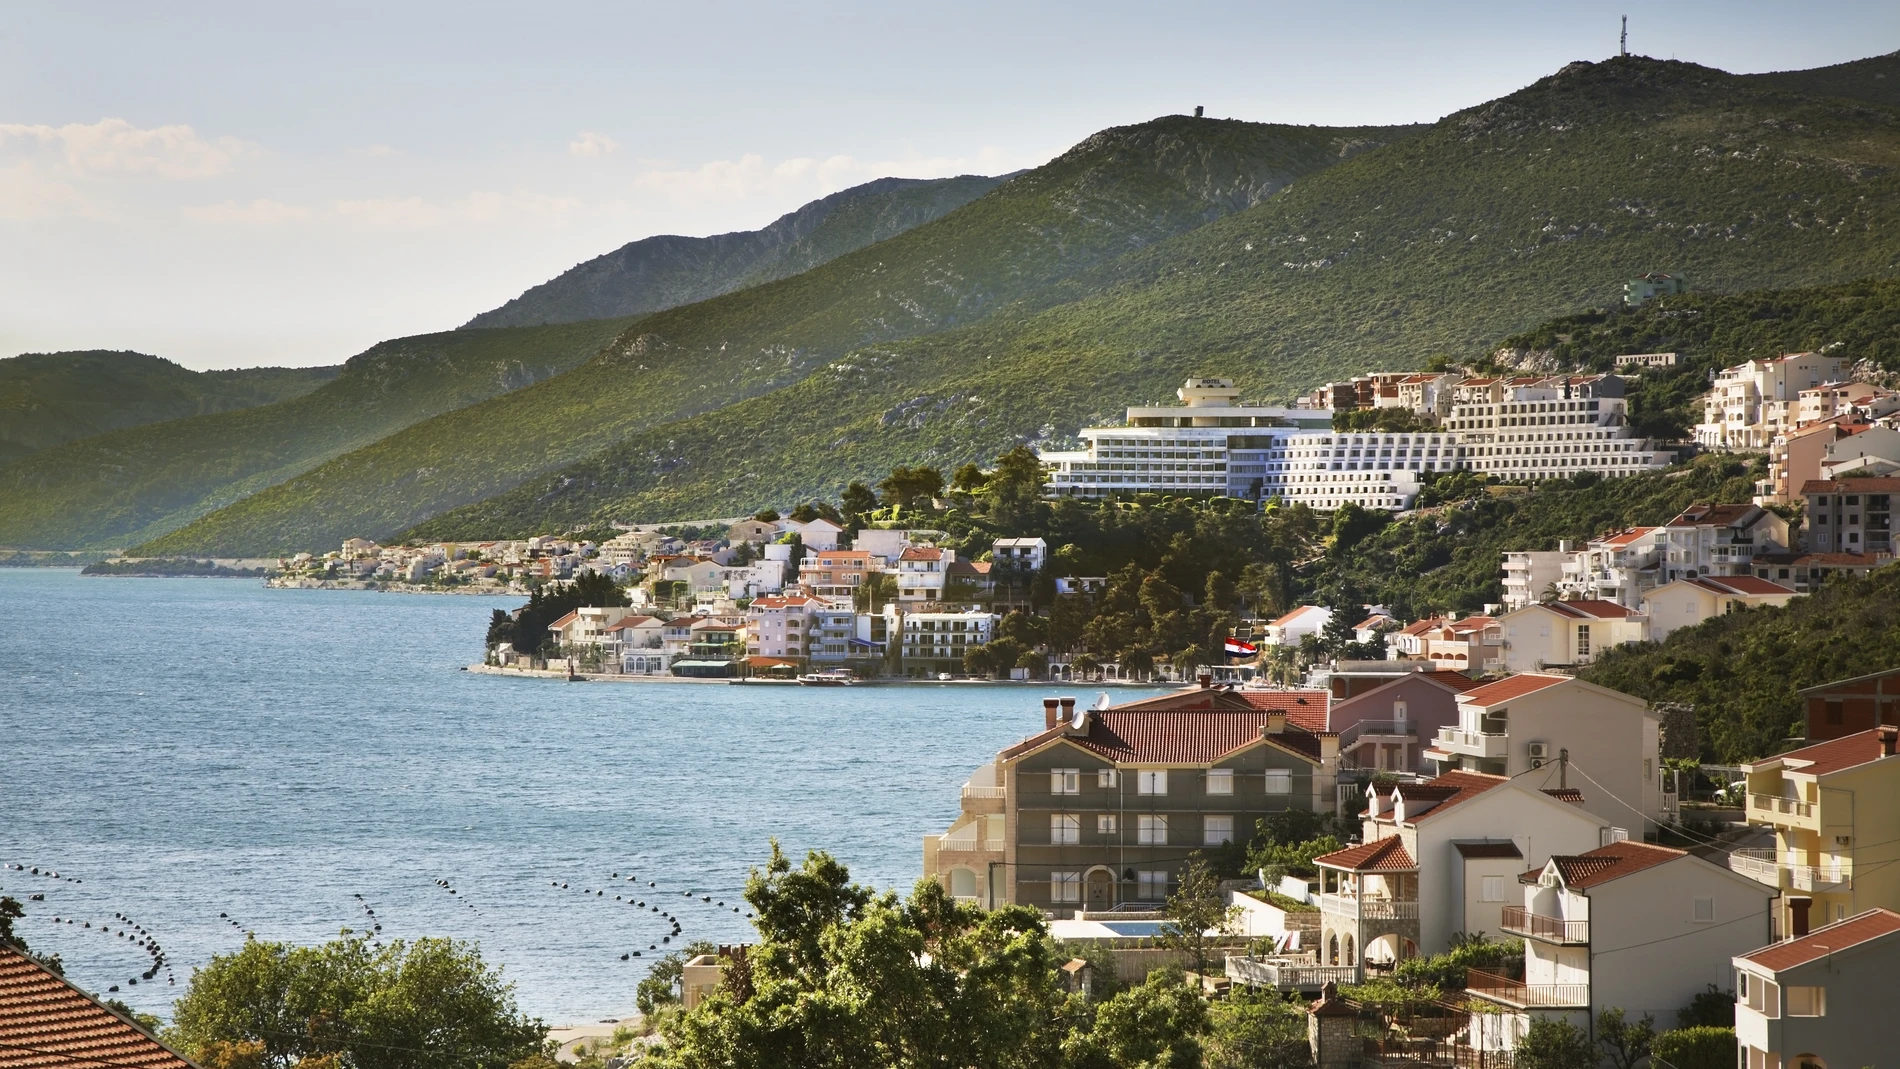 Neum es el único pueblo con salida al mar de Bosnia y Herzegovina y que permite que el país tenga acceso marítimo